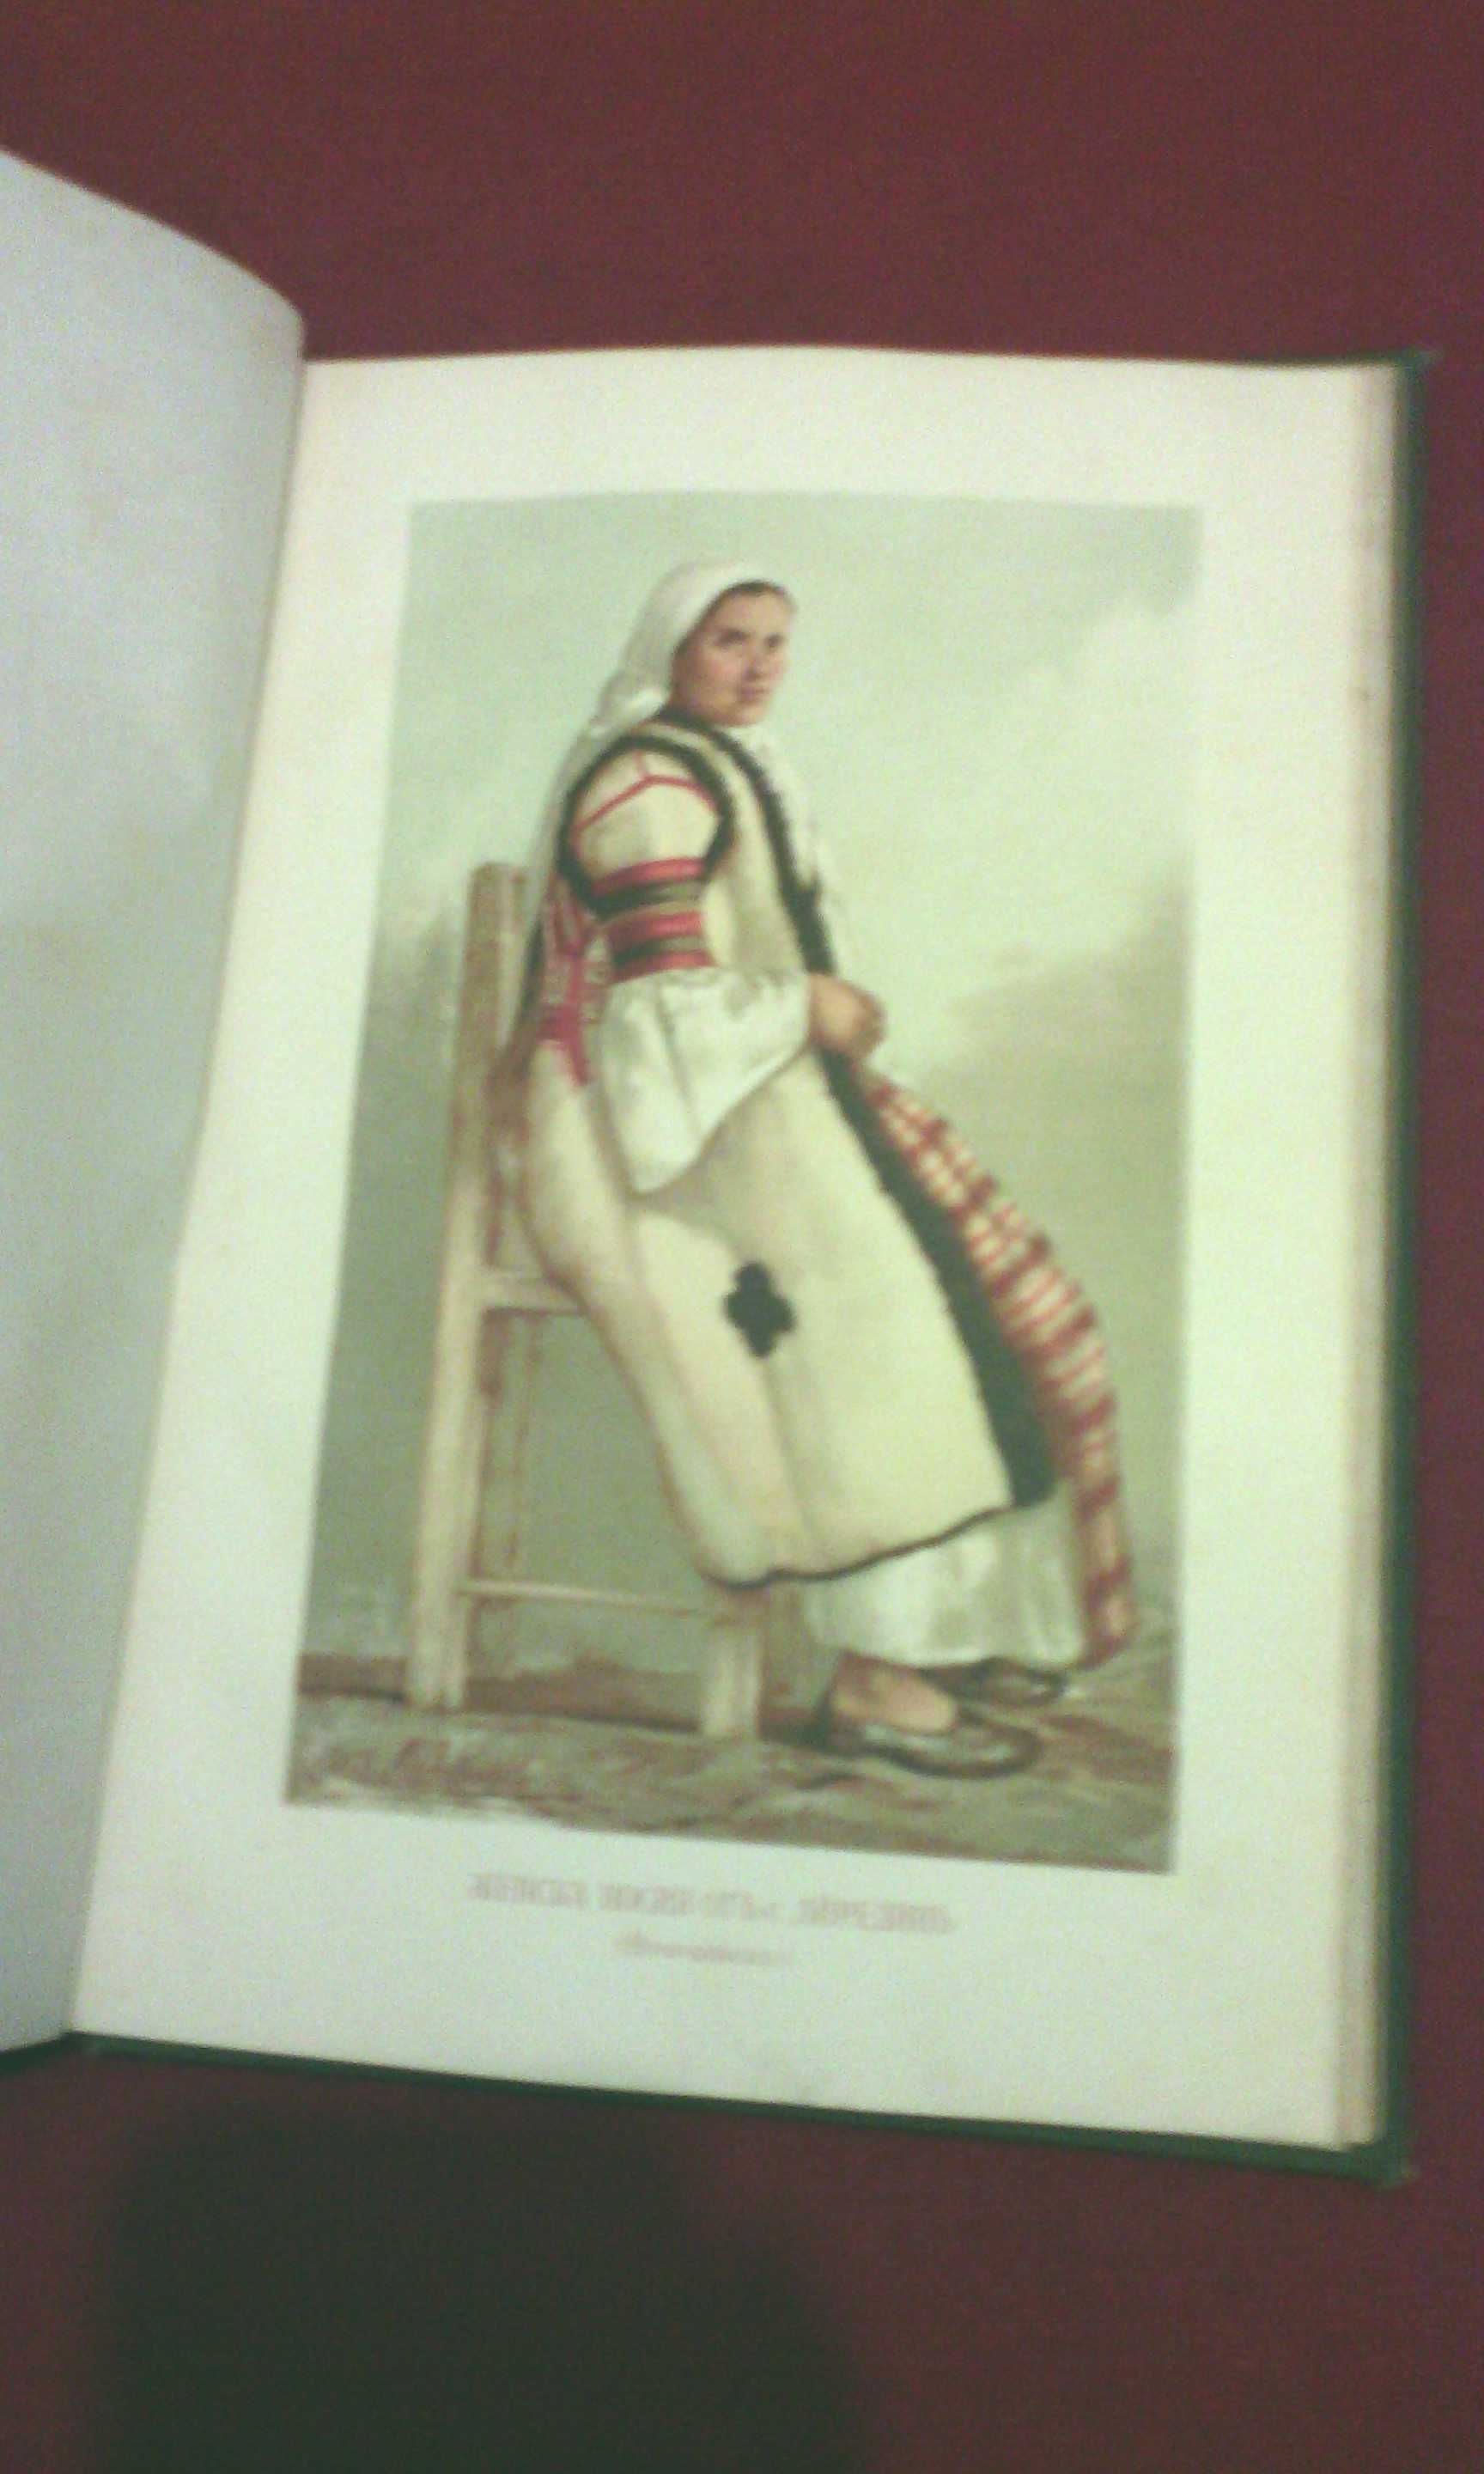 Сборникъ за народни умотворения, наука и книжнина , книга VІ - 1891 г